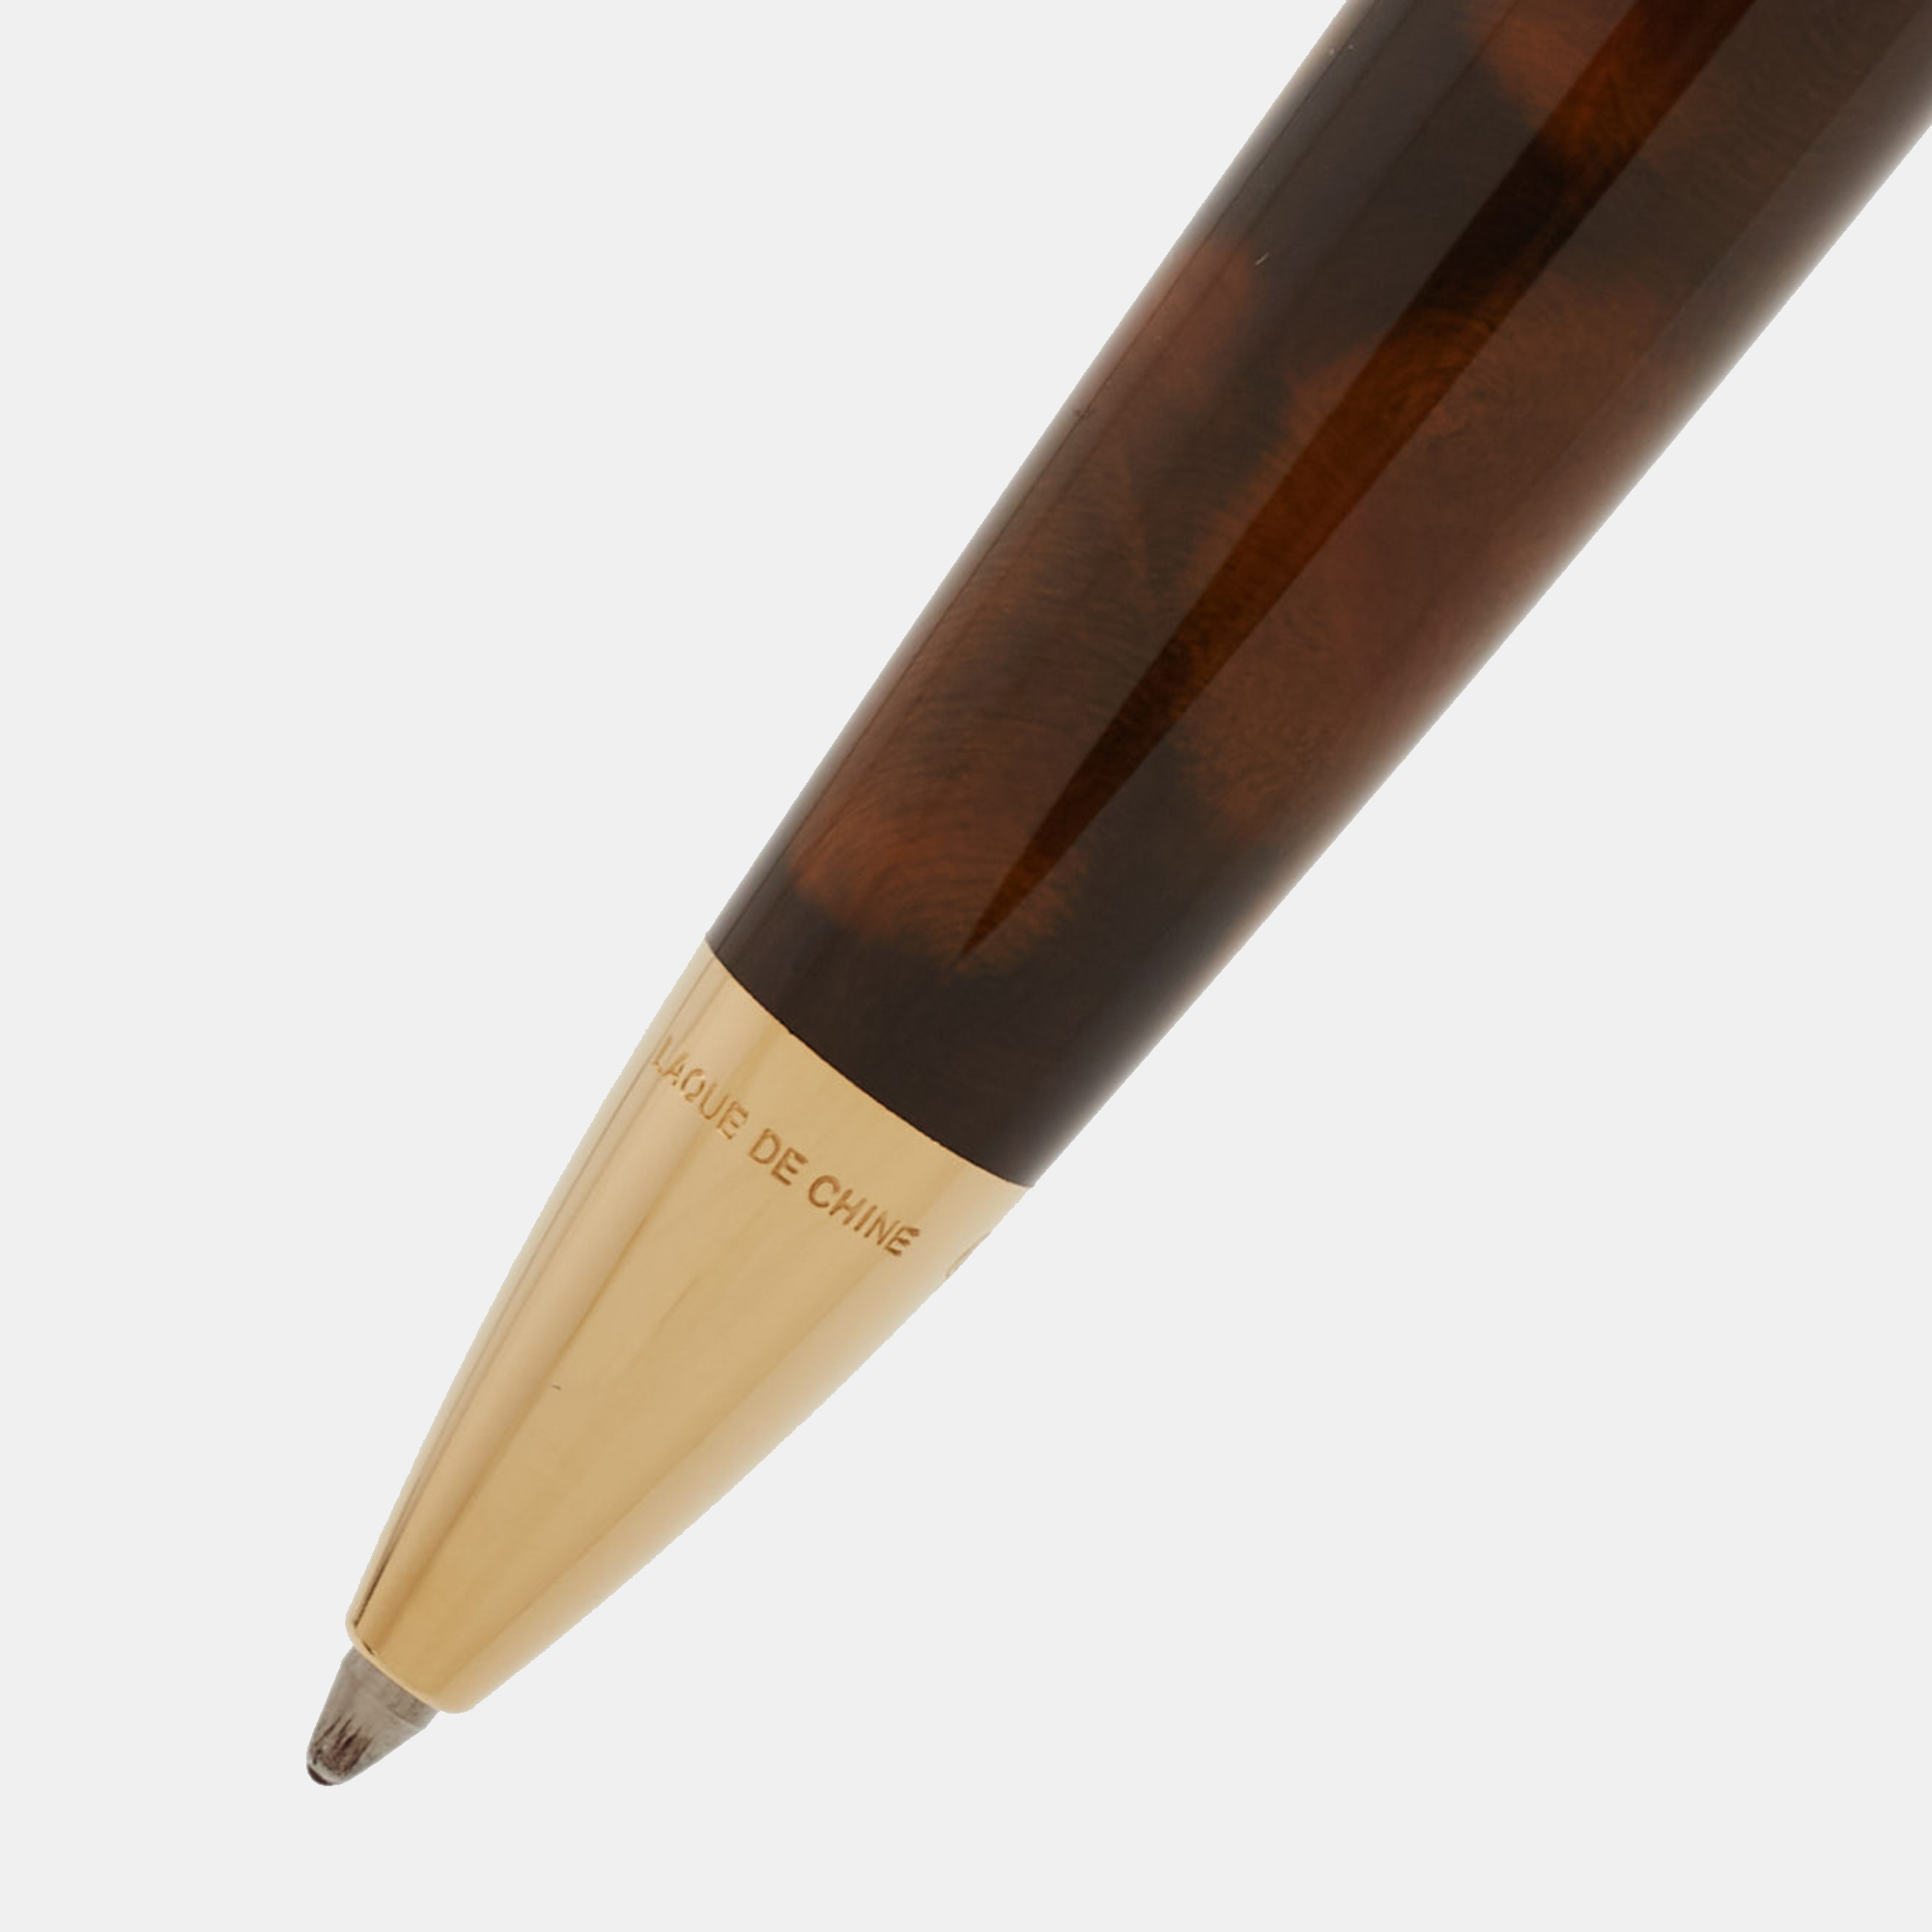 S.T. Dupont Da Vinci Lacquer Gold Tone Ballpoint Pen